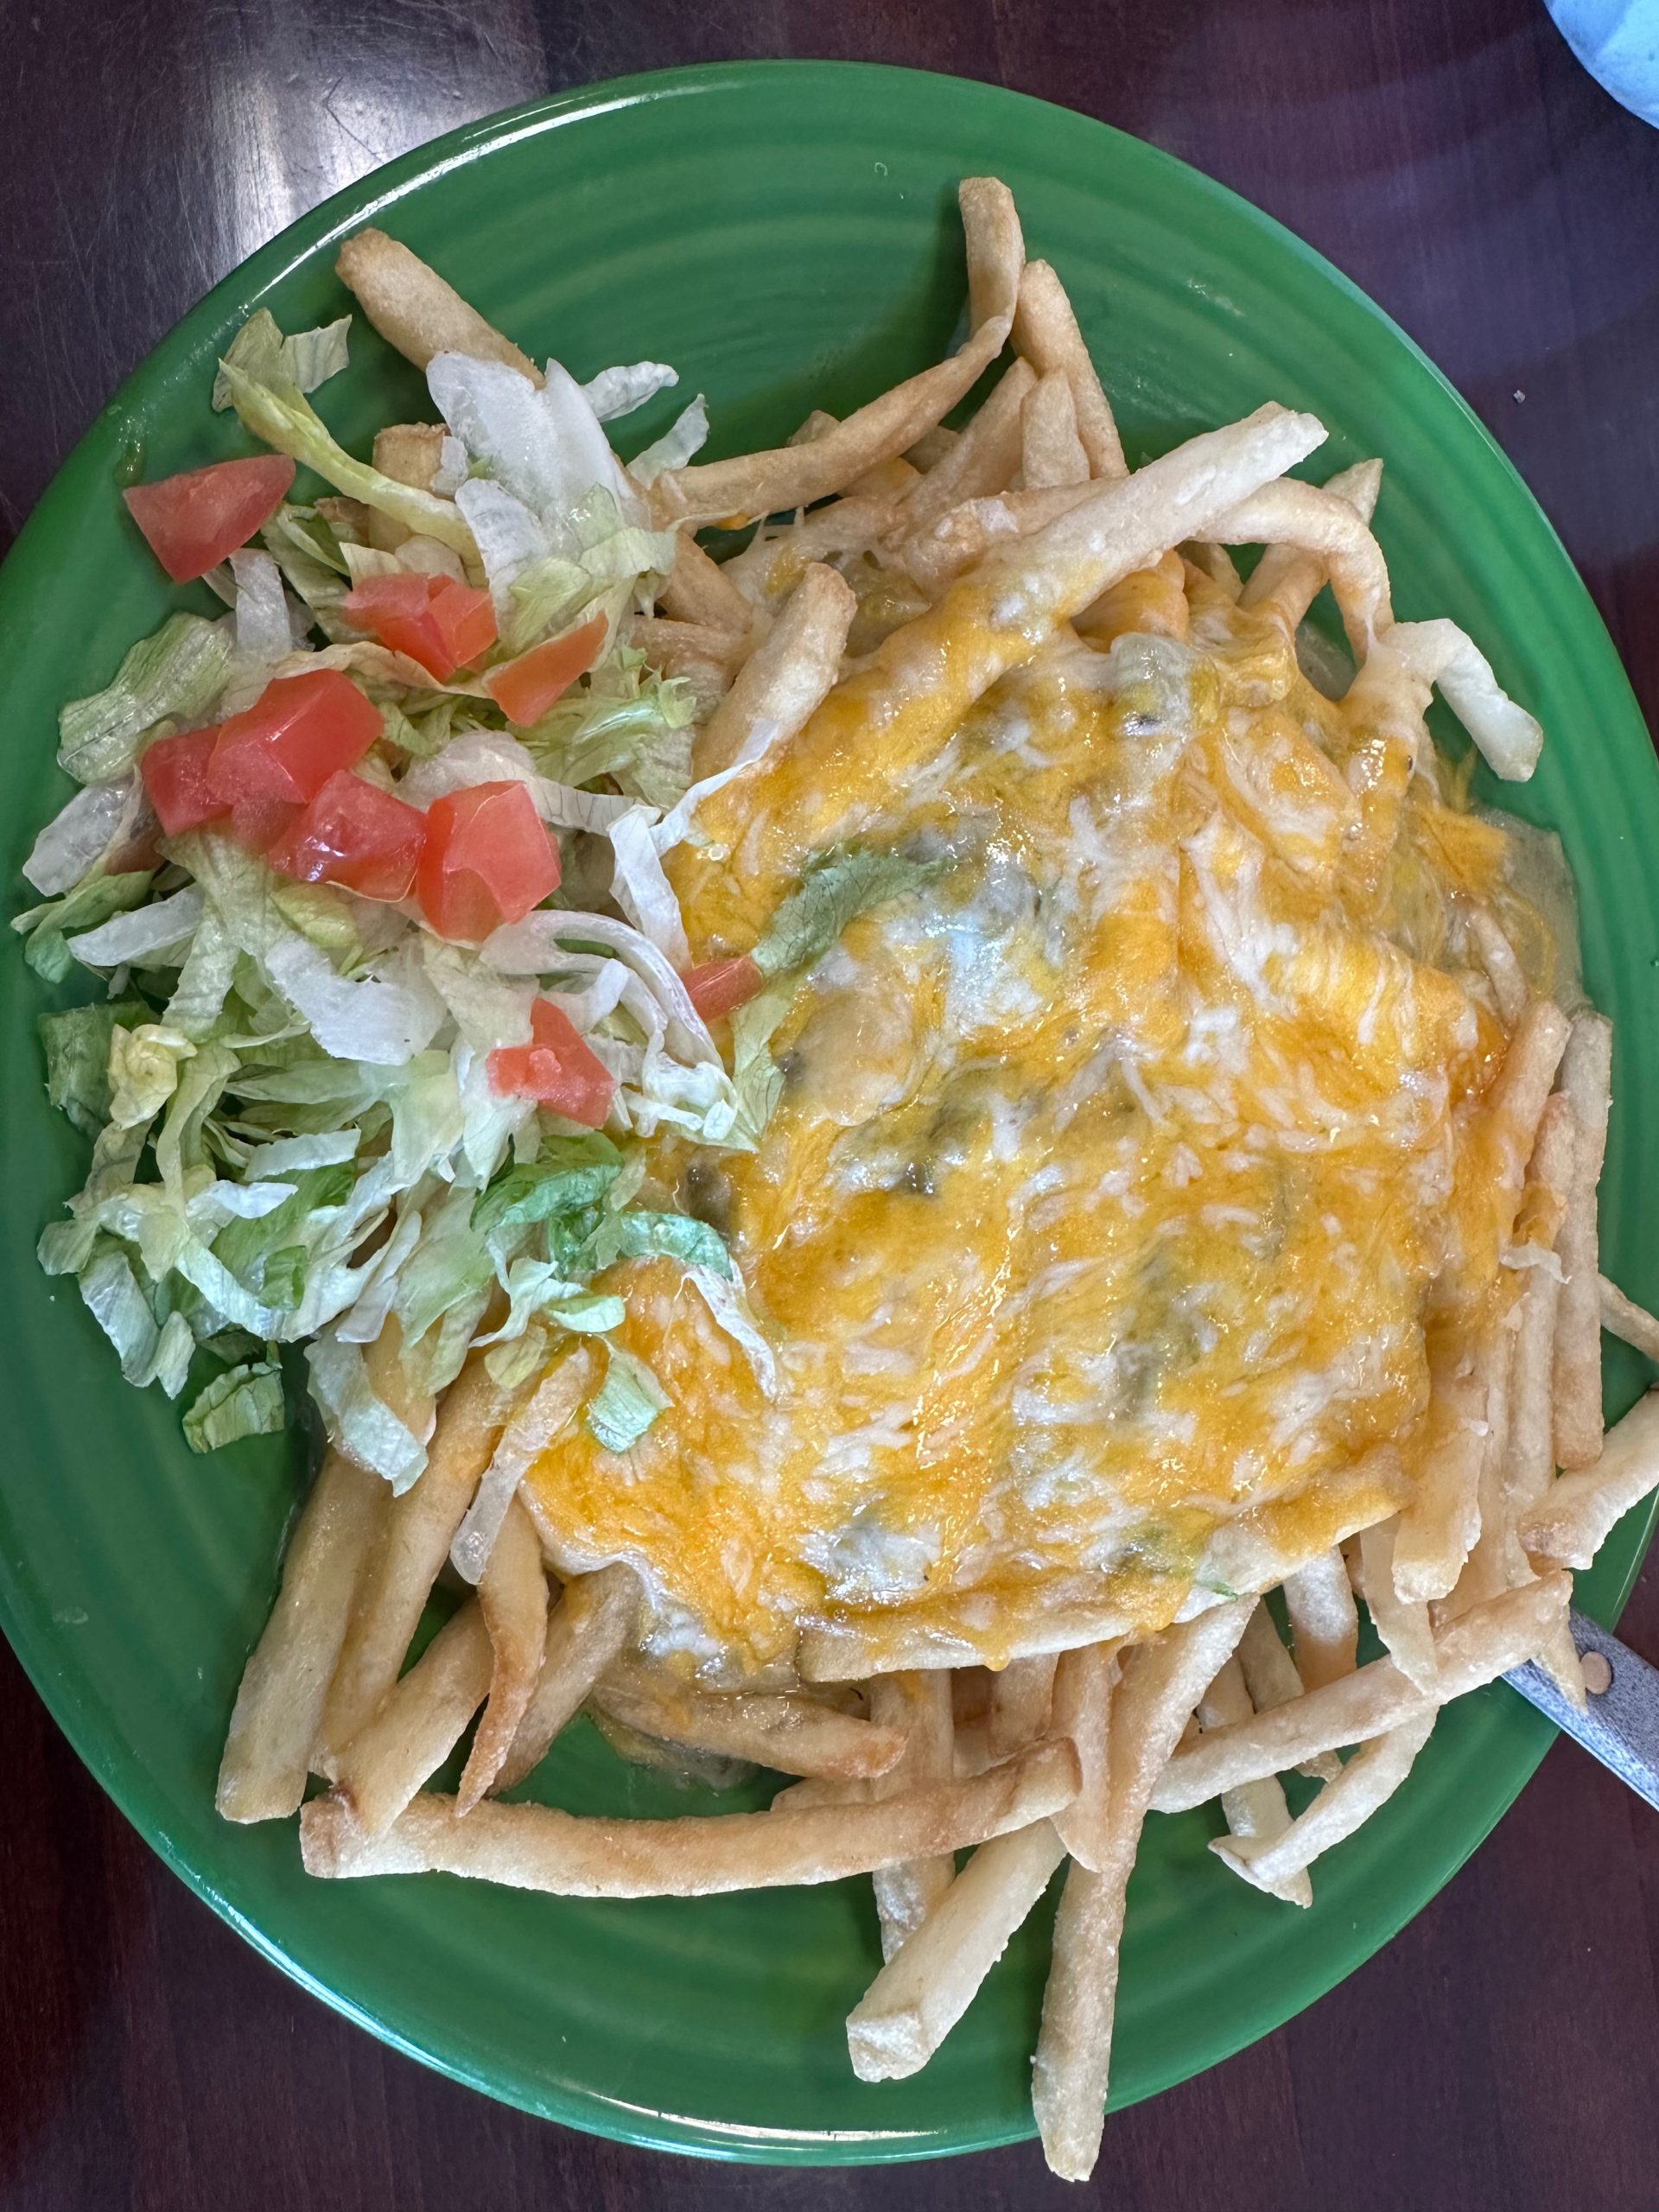 Jimmy’s Cafe – Albuquerque, New Mexico